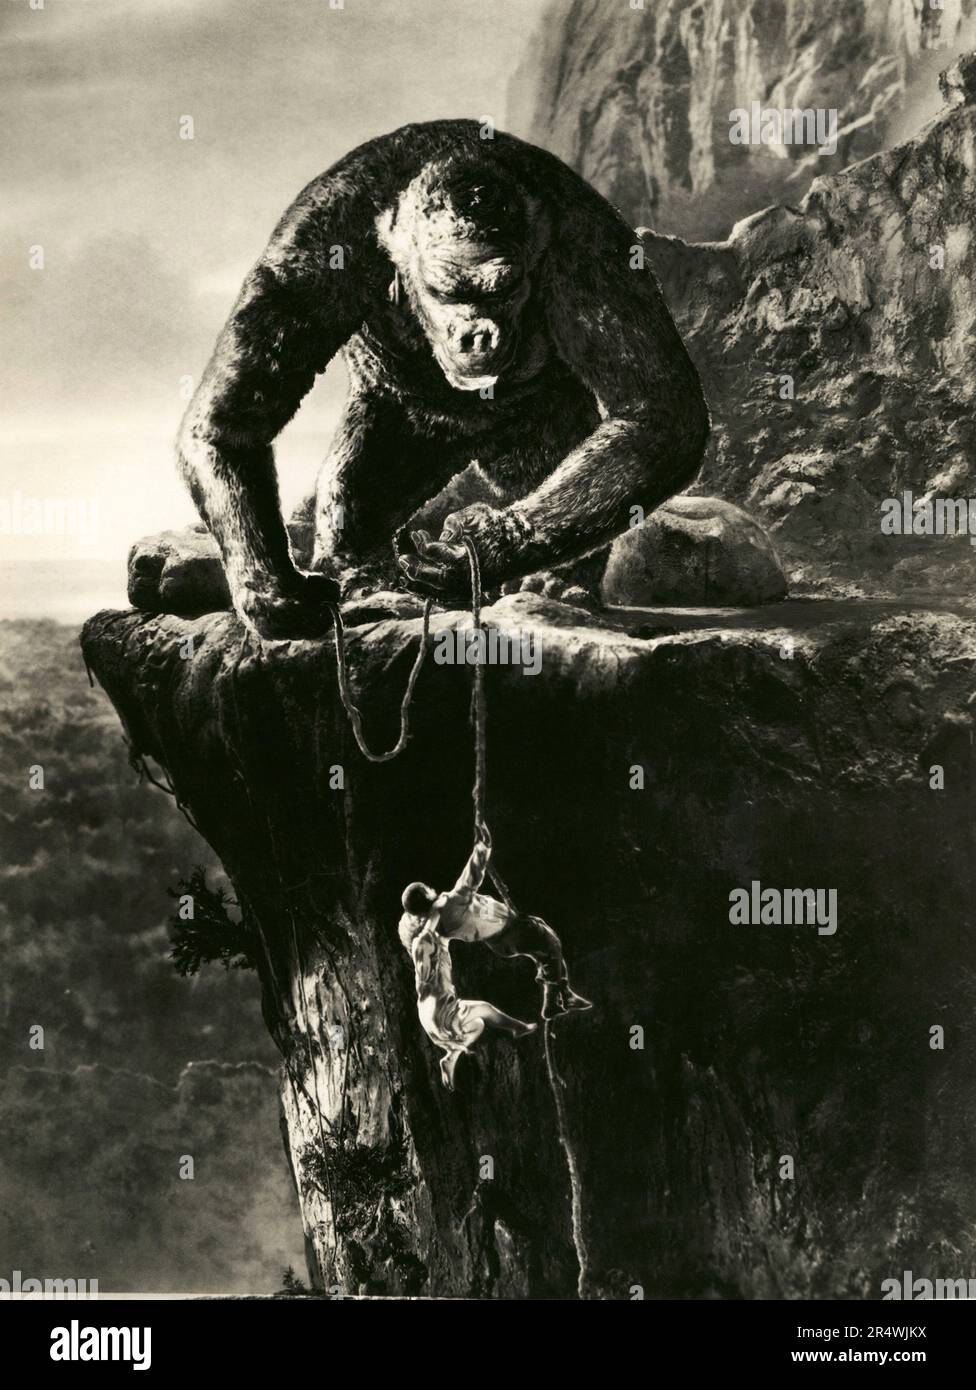 King Kong è un 1933 American fantasy monster/film di avventura. Esso stelle Fay Wray, Bruce Cabot e Robert Armstrong e si è aperta a New York City il 2 marzo 1933 a recensioni entusiastiche. Il film racconta di un gigantesco, isola-abitazione scimmione chiamato Kong che muore nel tentativo di possedere una giovane e bella donna. Kong si distingue per il suo stop-motion animation da Willis O'Brien e la sua partitura musicale da Max Steiner. King Kong è spesso citato come uno dei più celebri film nella storia del cinema. Foto Stock